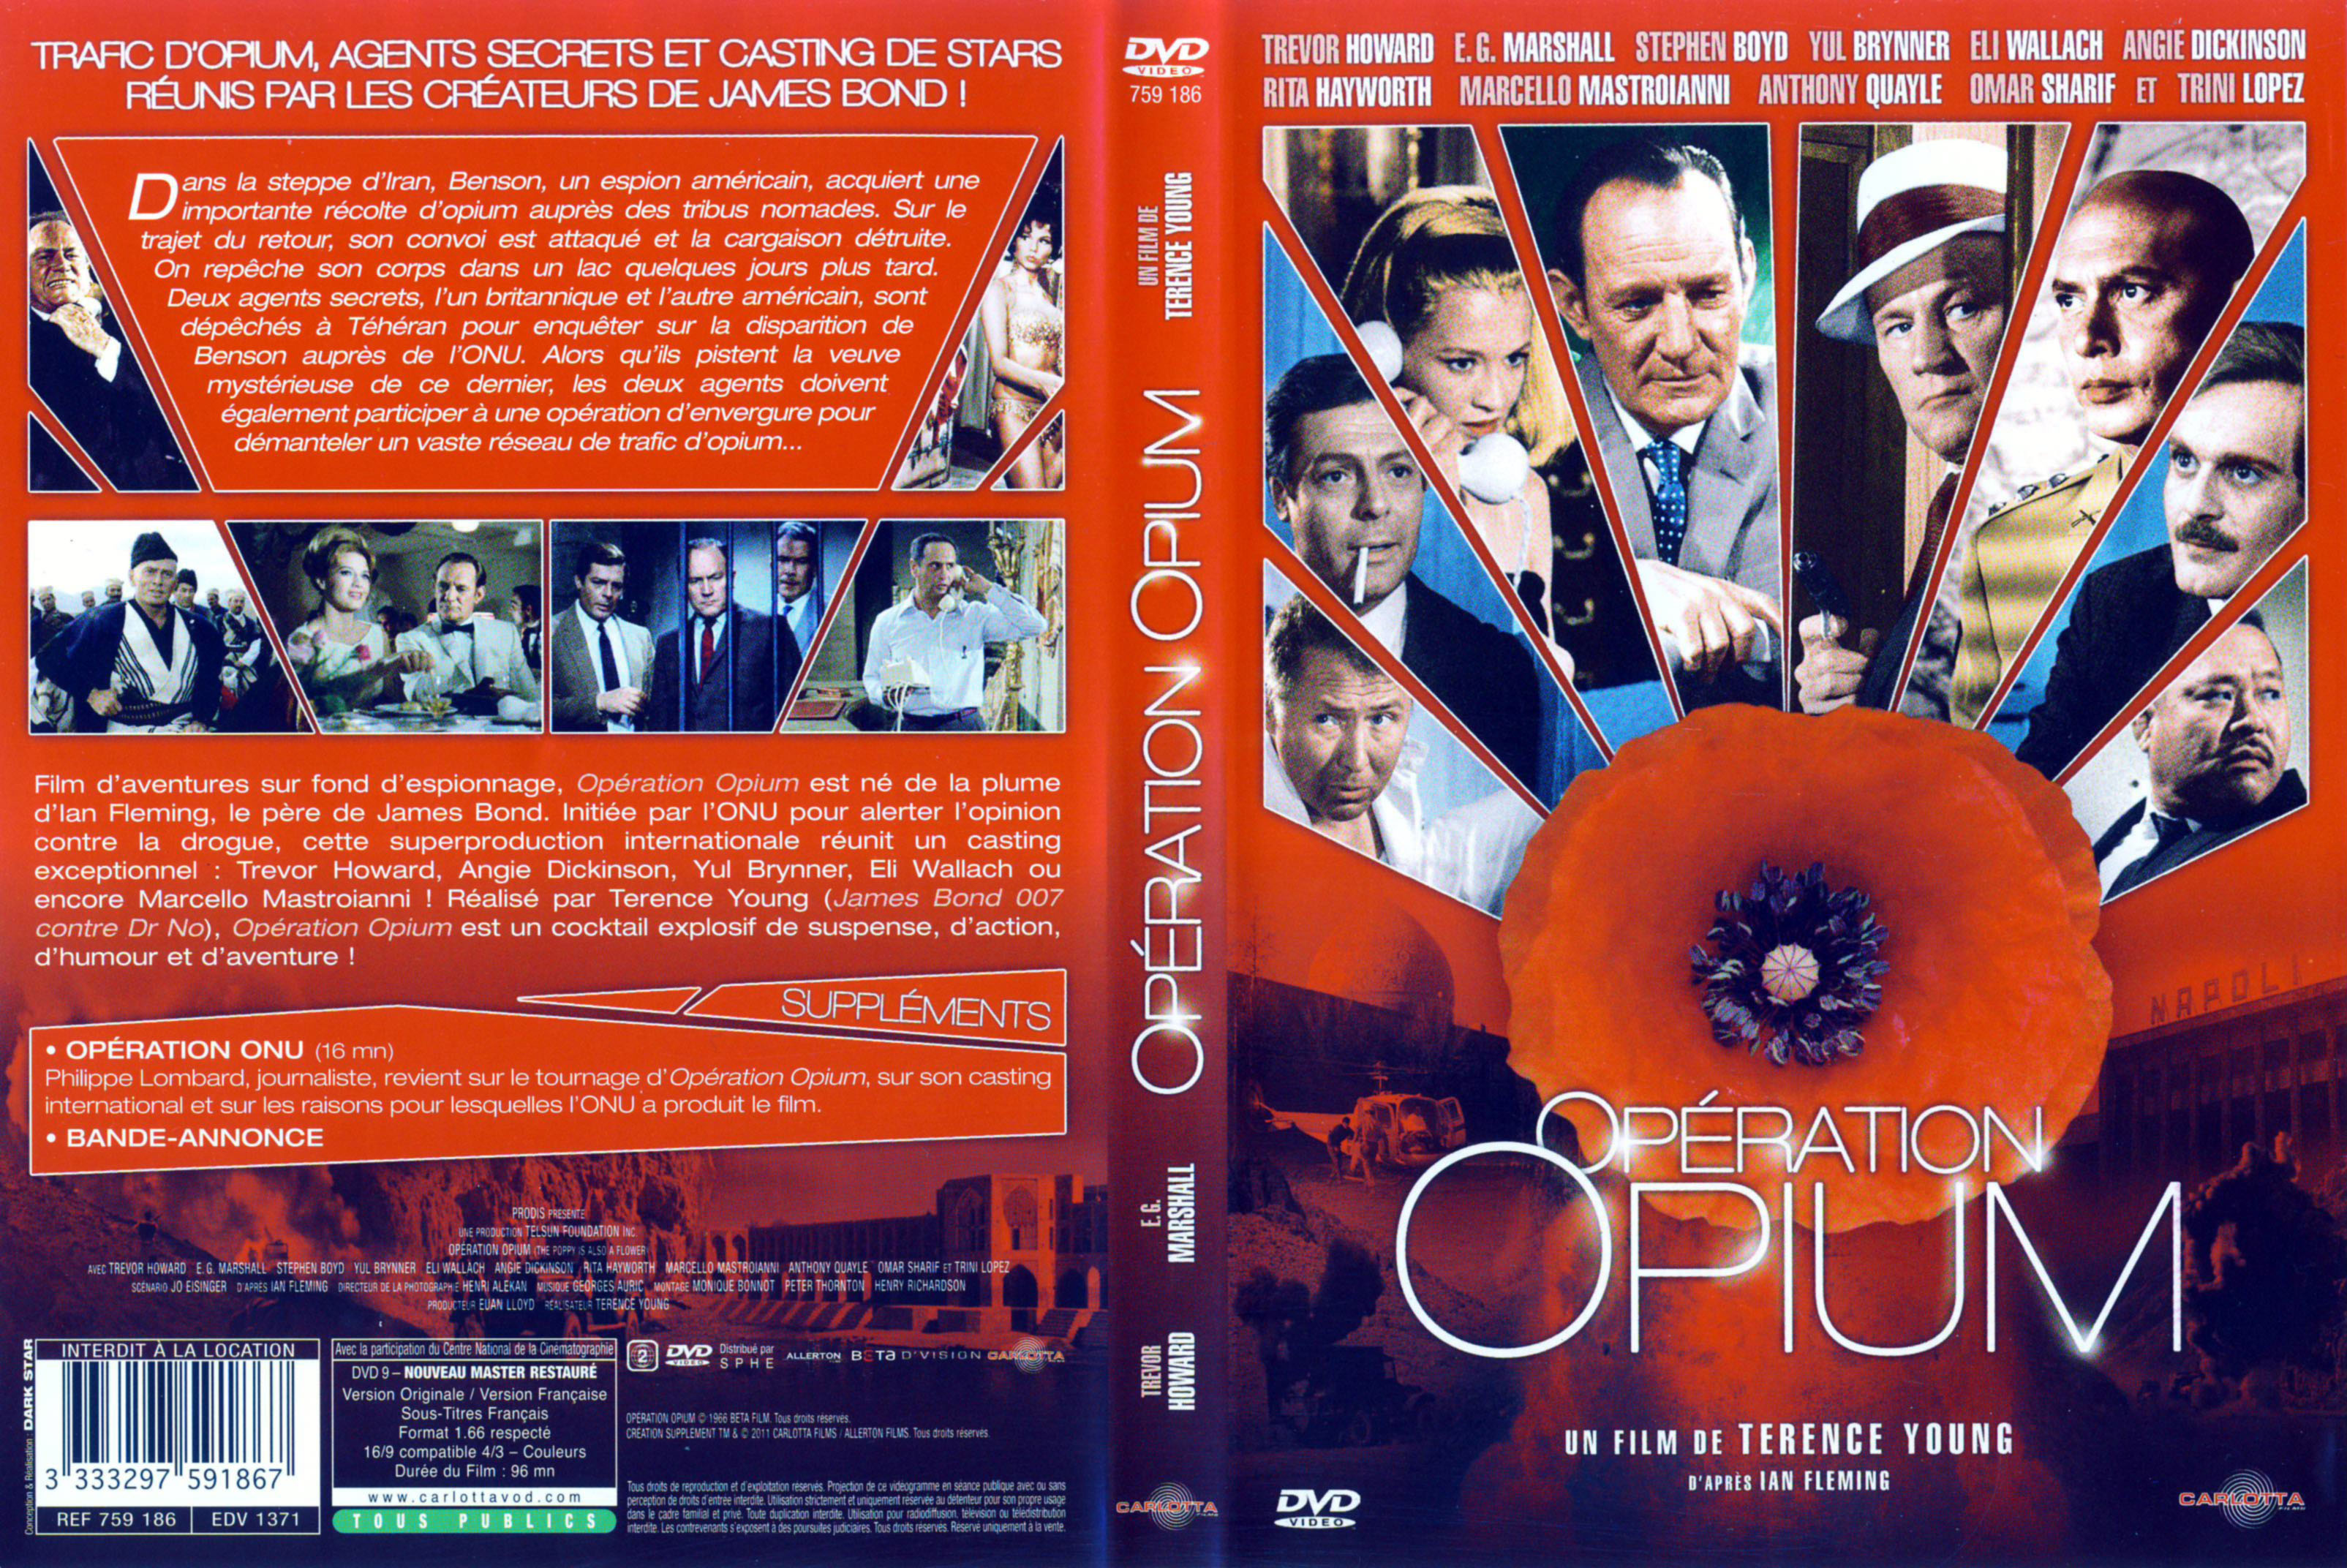 Jaquette DVD Opration opium v2